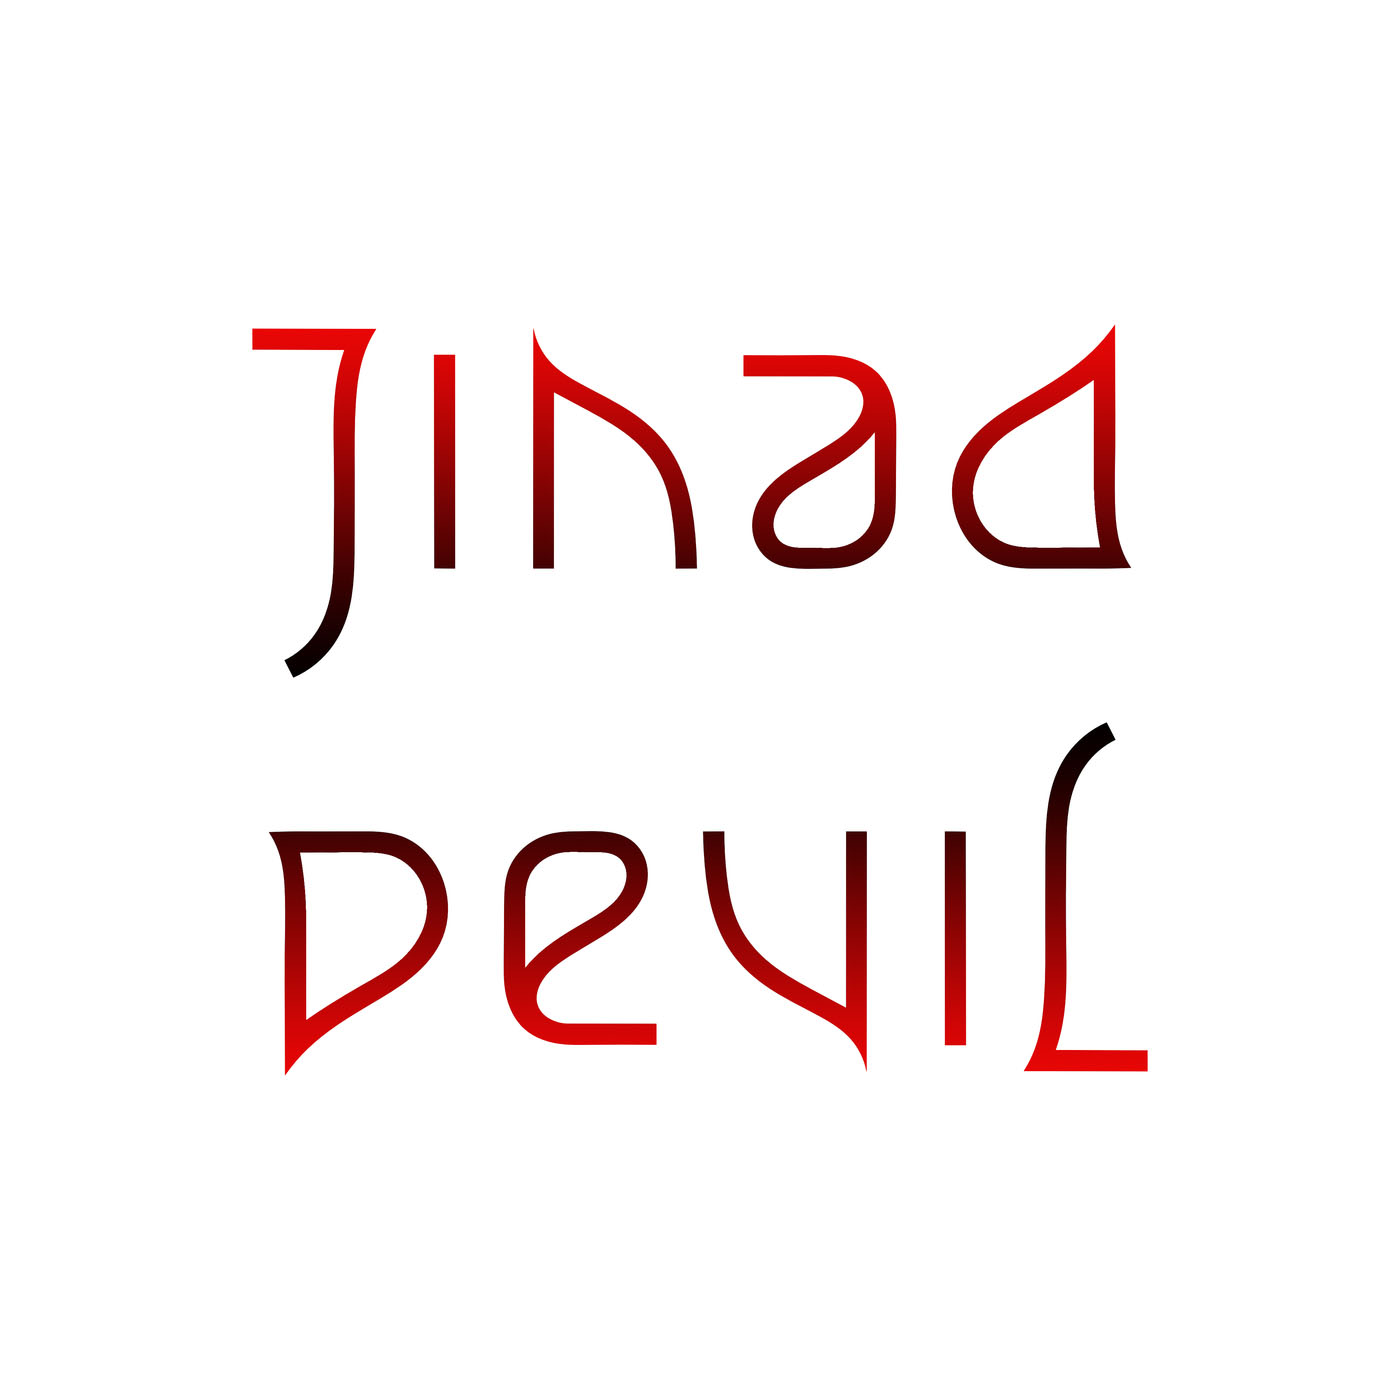 ambigram Jihad Devil